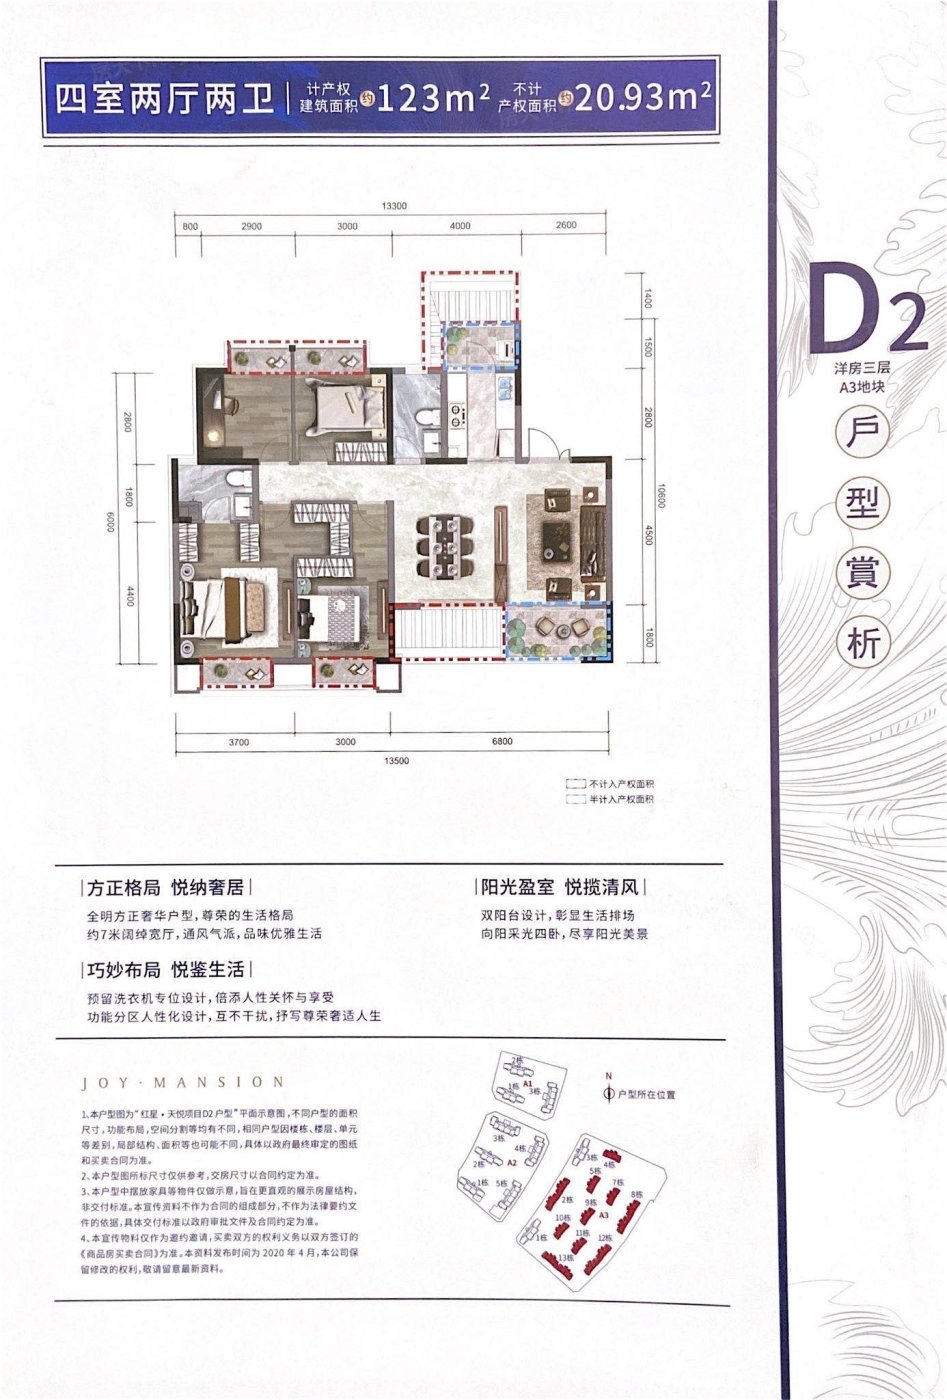 红星天悦高层住宅、低密洋房在售 均价11000元/平米起